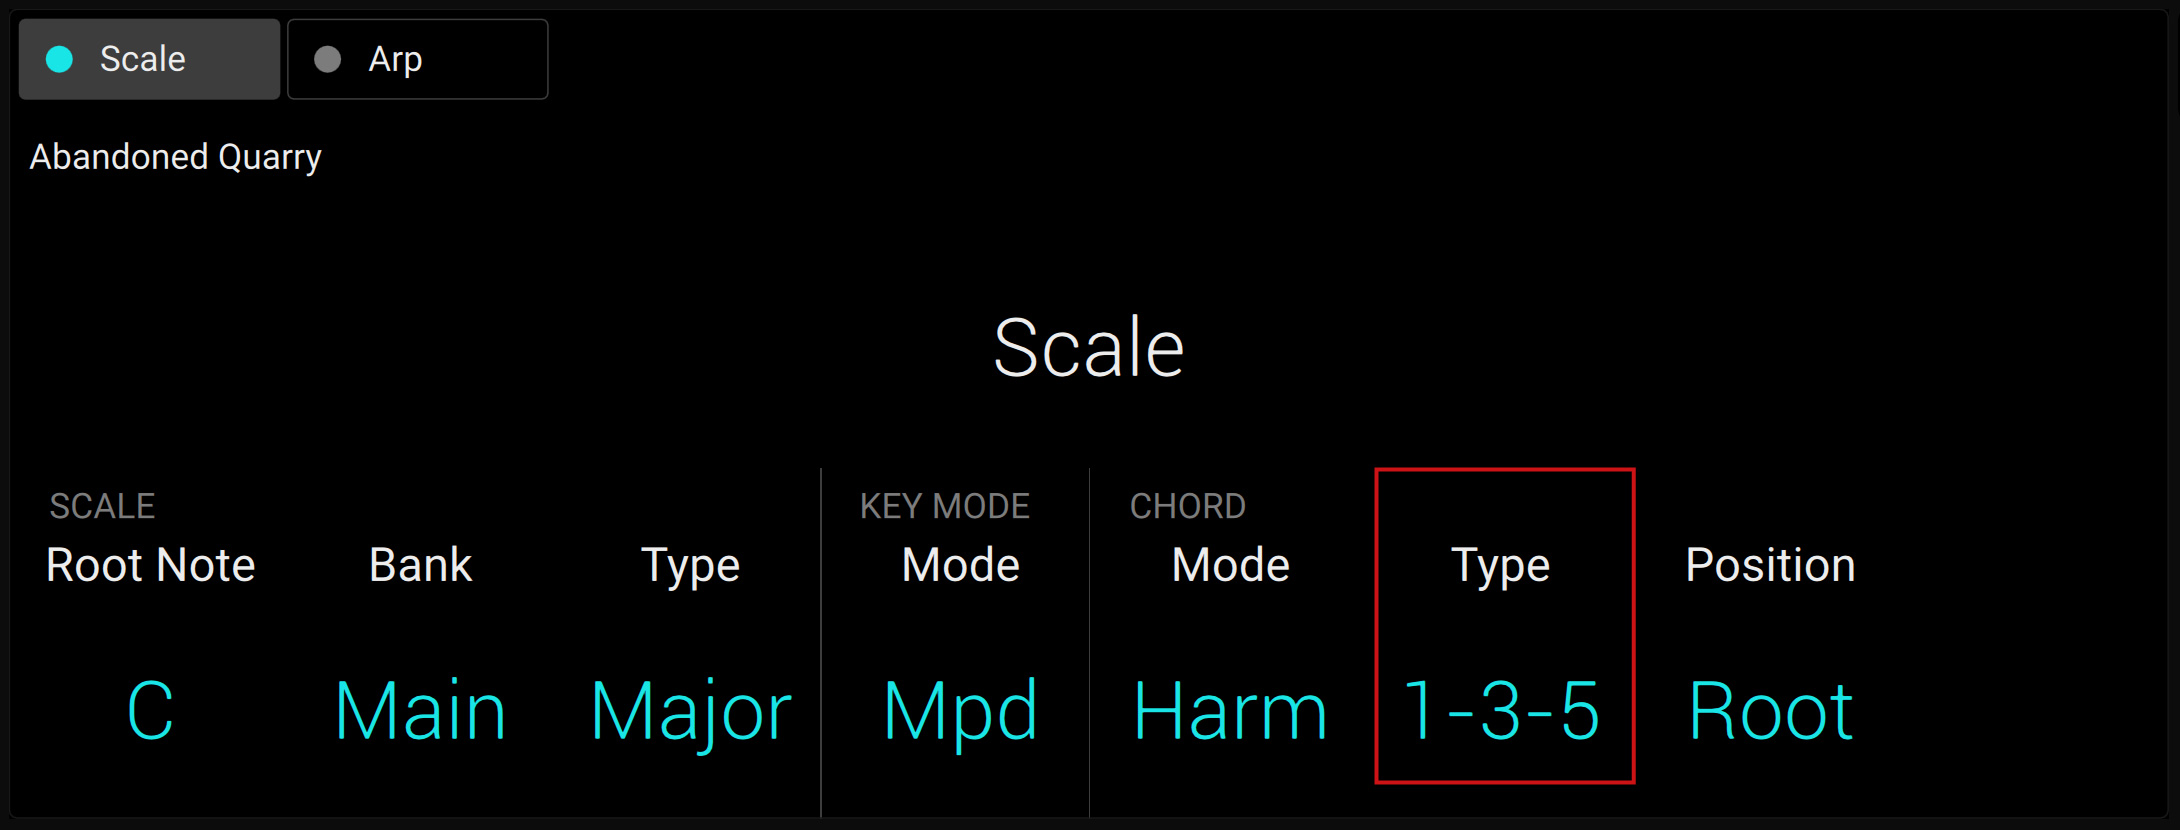 KS-MK3_D_PlayAssist-Scale-CHORD-Type.jpg